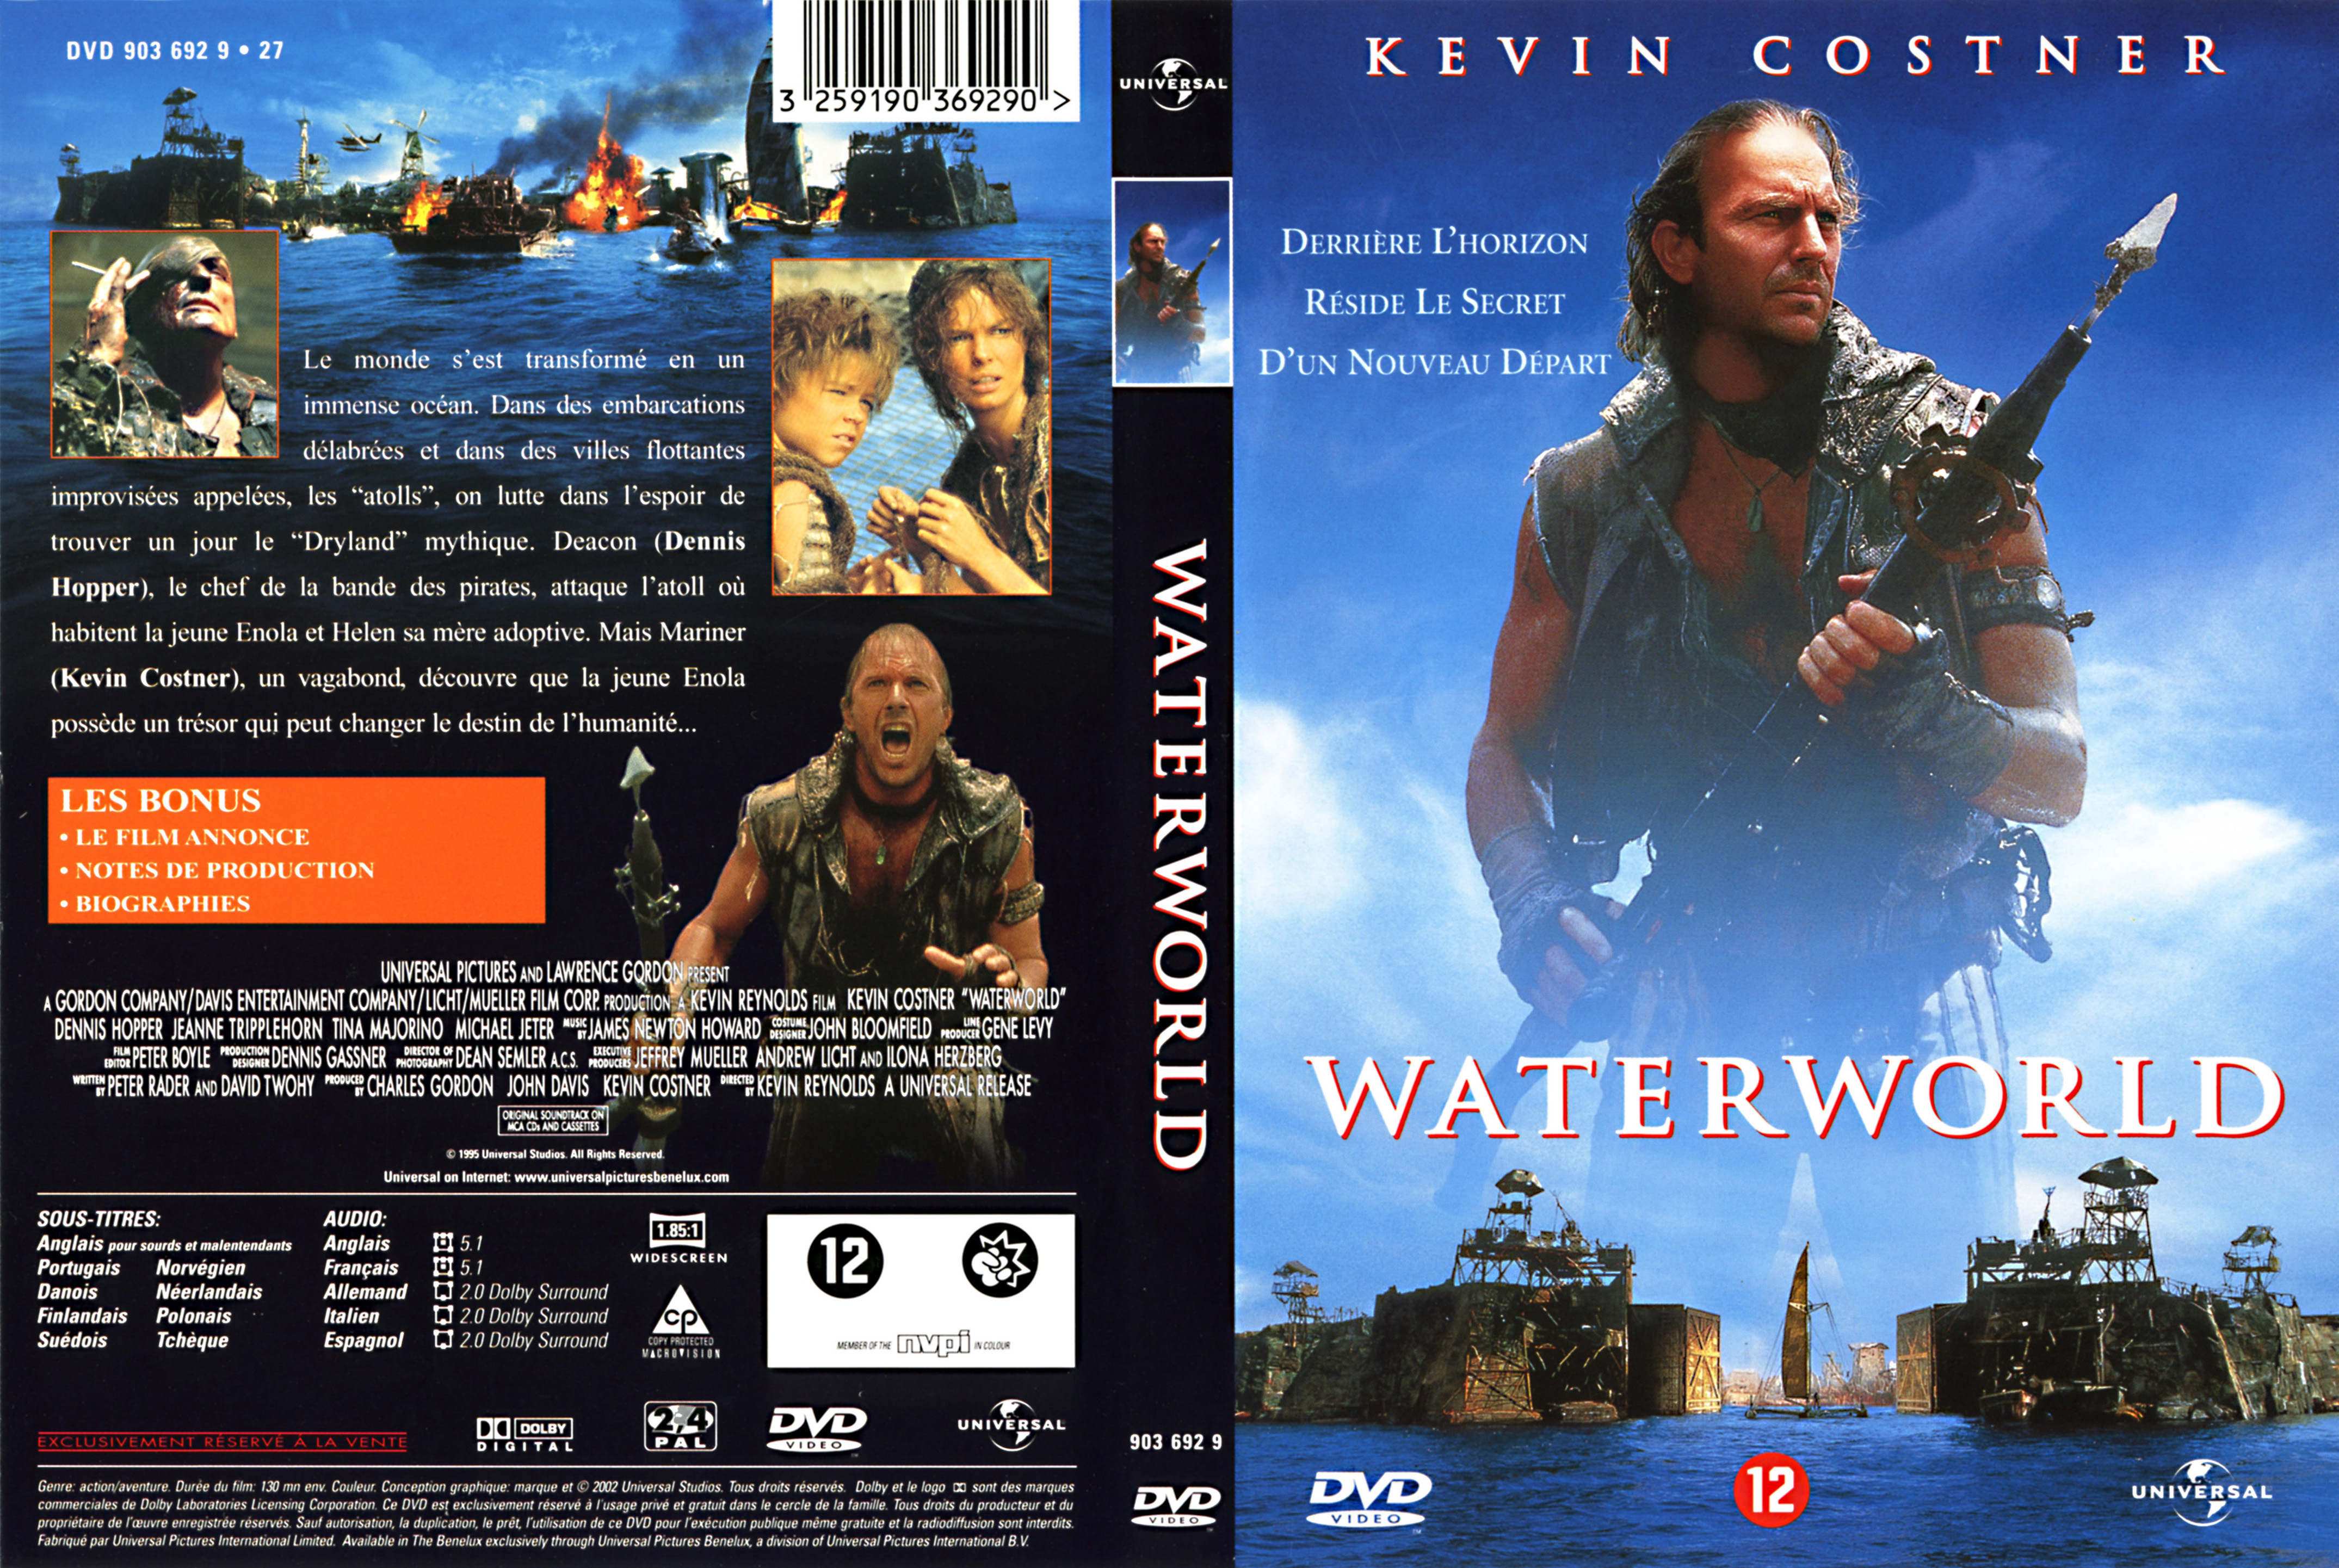 Jaquette DVD Waterworld v2